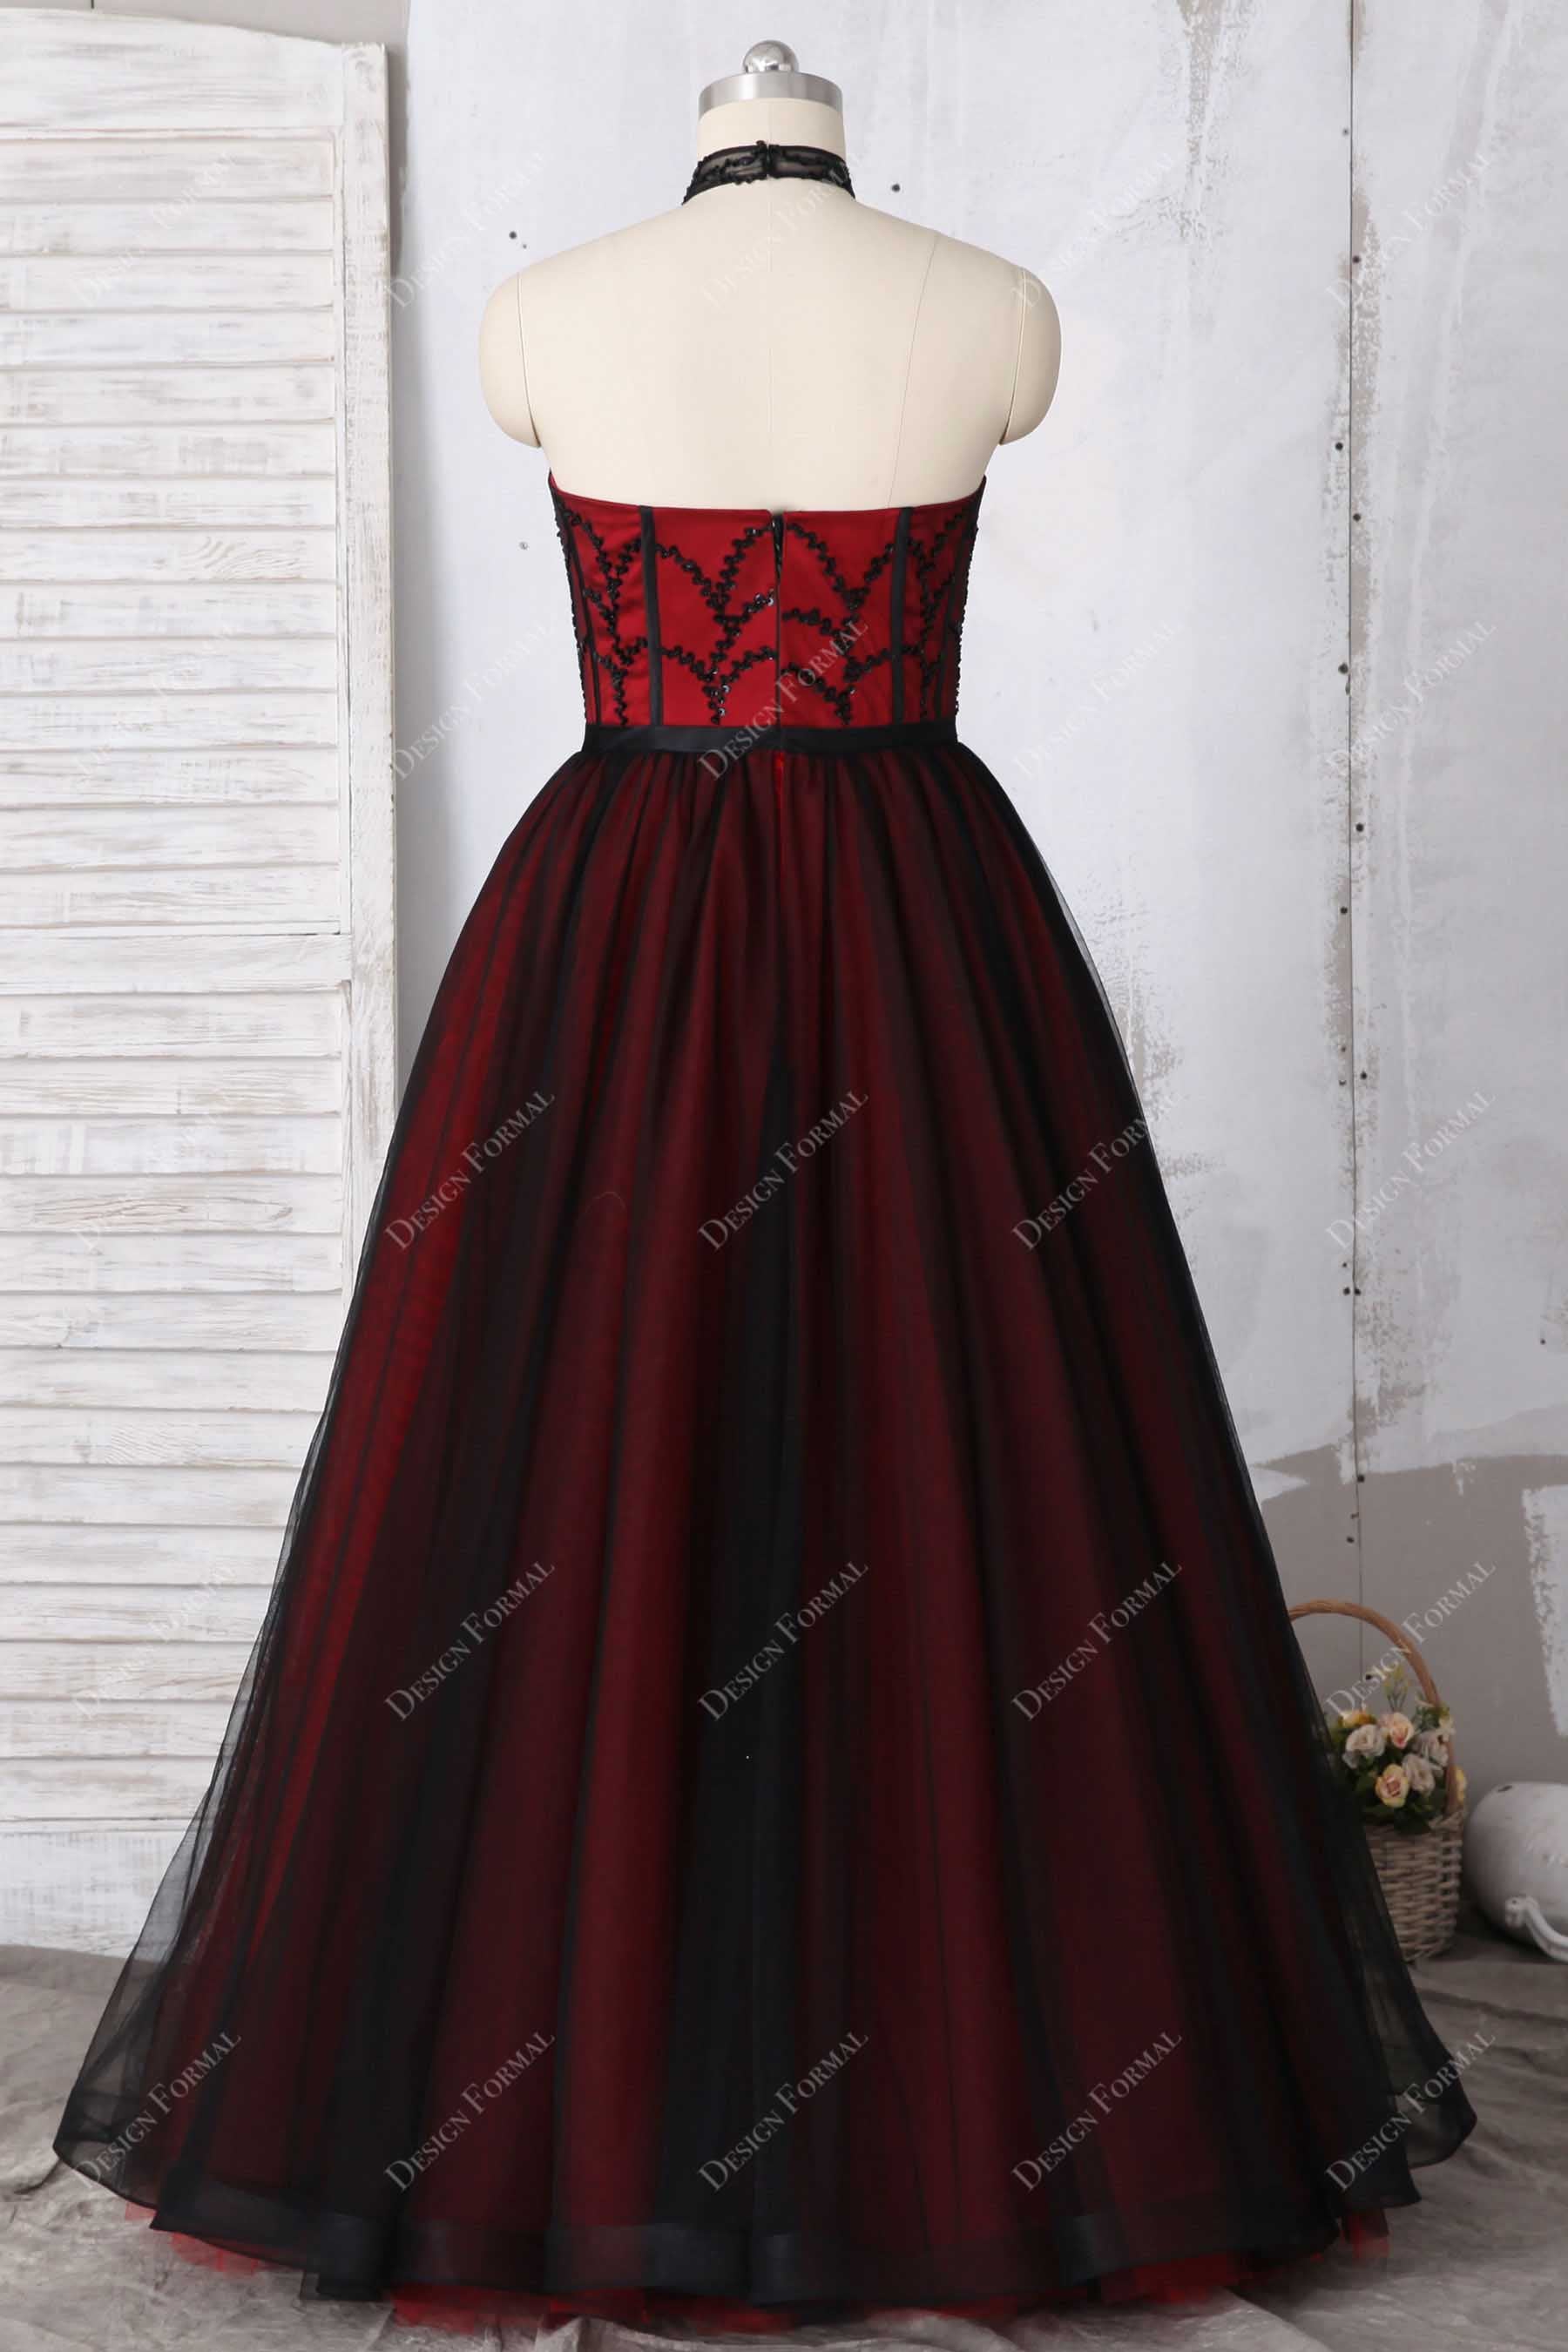 Floor Length Black Tulle Overlaid Red Prom Dress